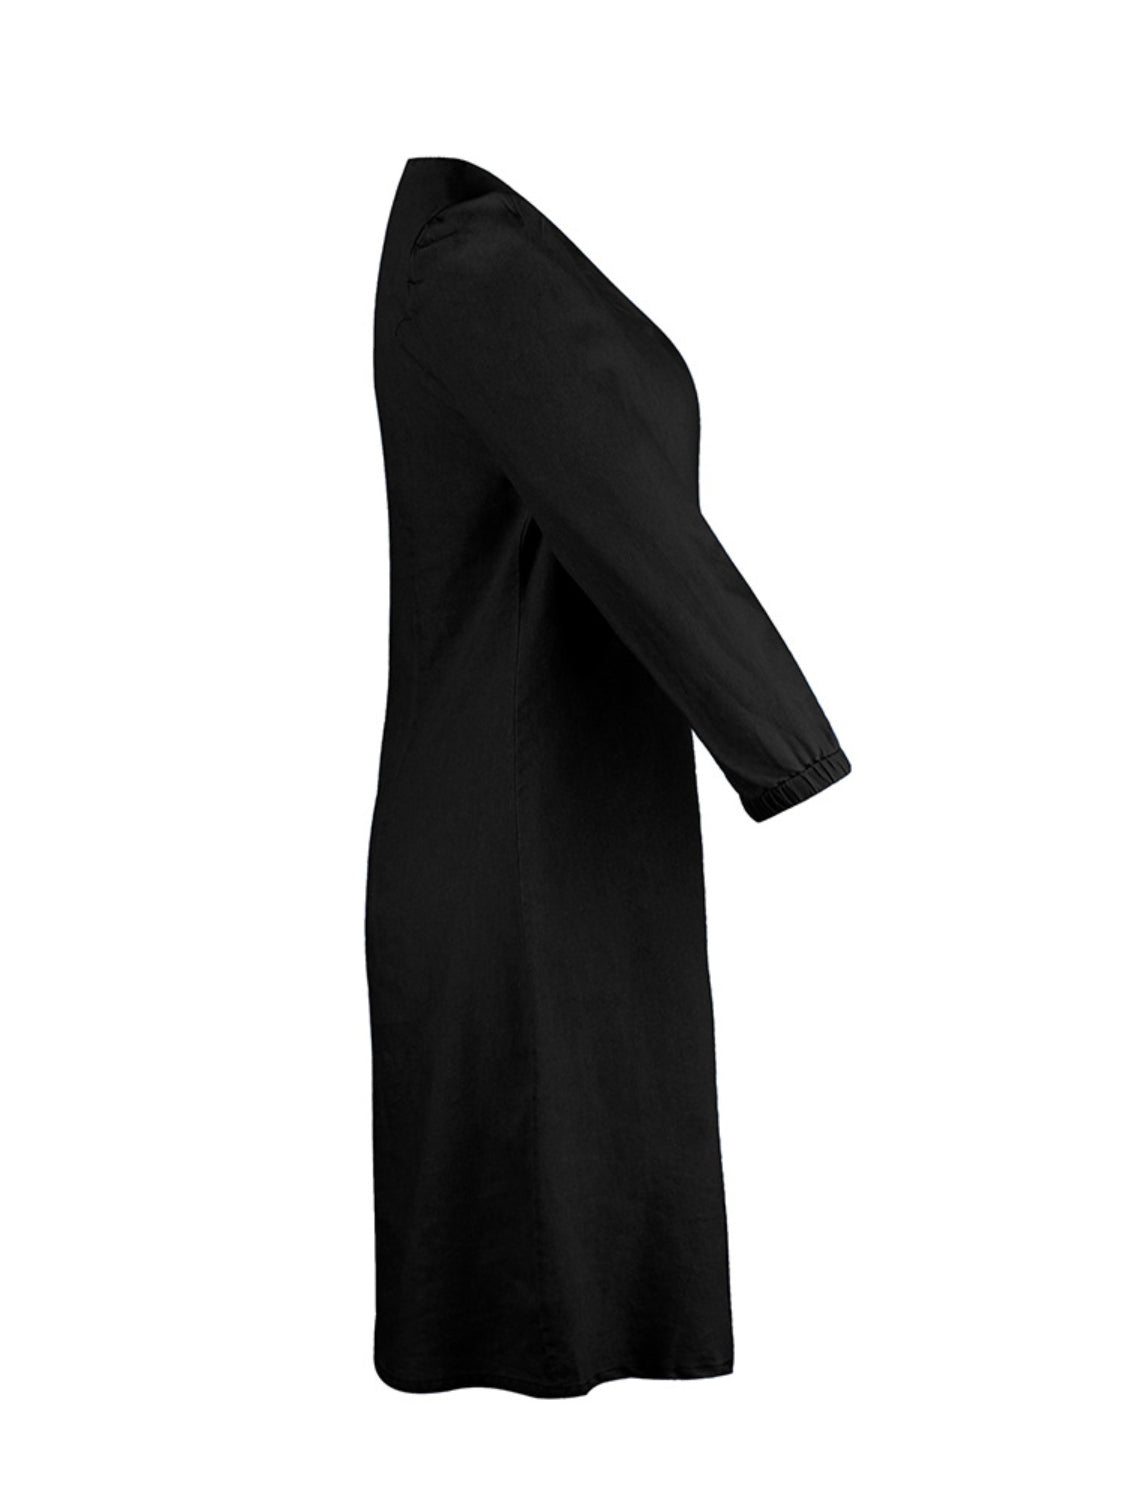 STUNNLY  Full Size V-Neck Half Sleeve Denim Dress   